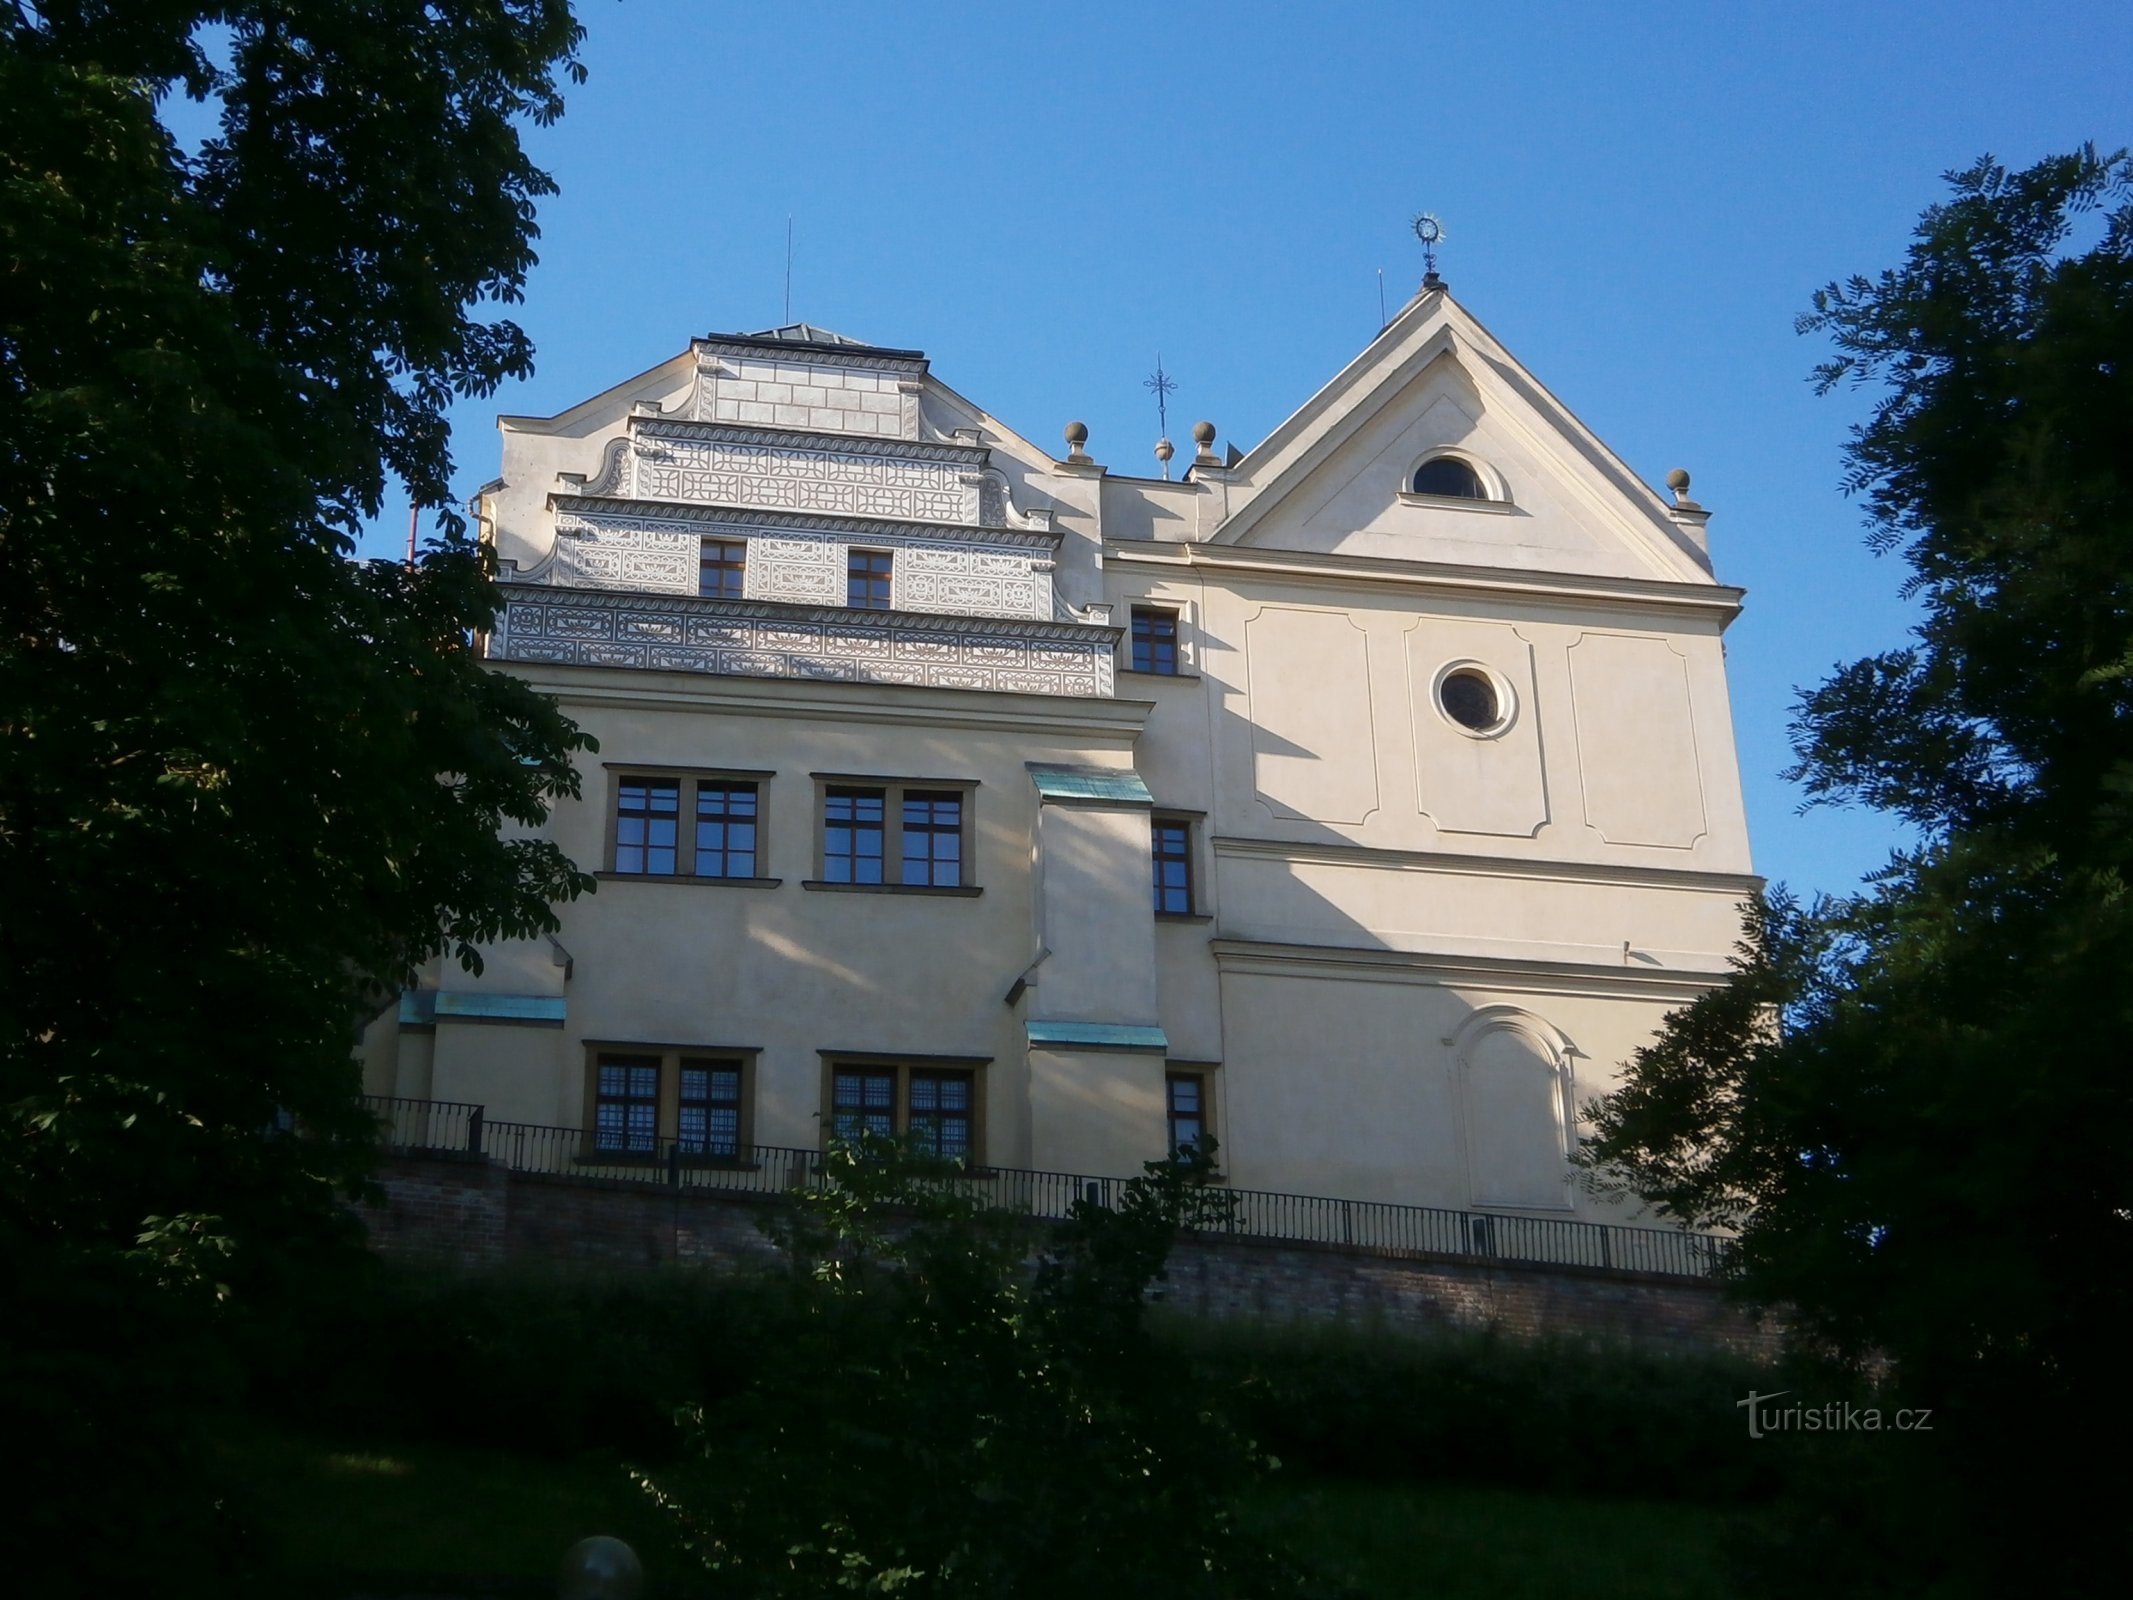 Το σπίτι του burgrave με την εκκλησία του Αγ. John of Nepomuck (Hradec Králové, 2.7.2016 Ιουλίου XNUMX)